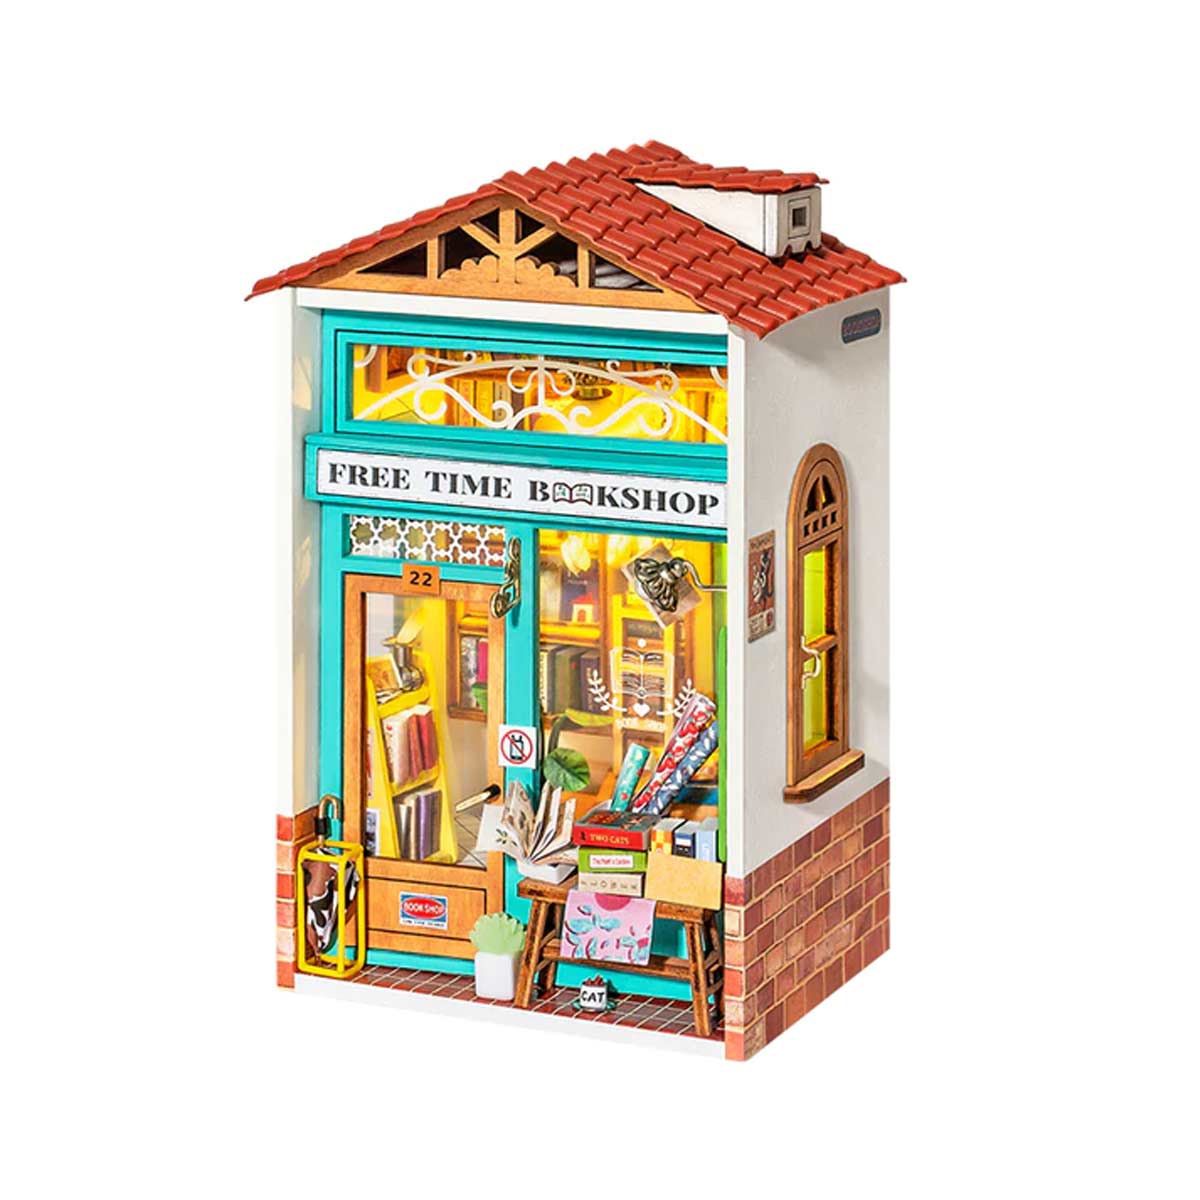 Bouwpakket Miniature House Kit Free Time Bookshop